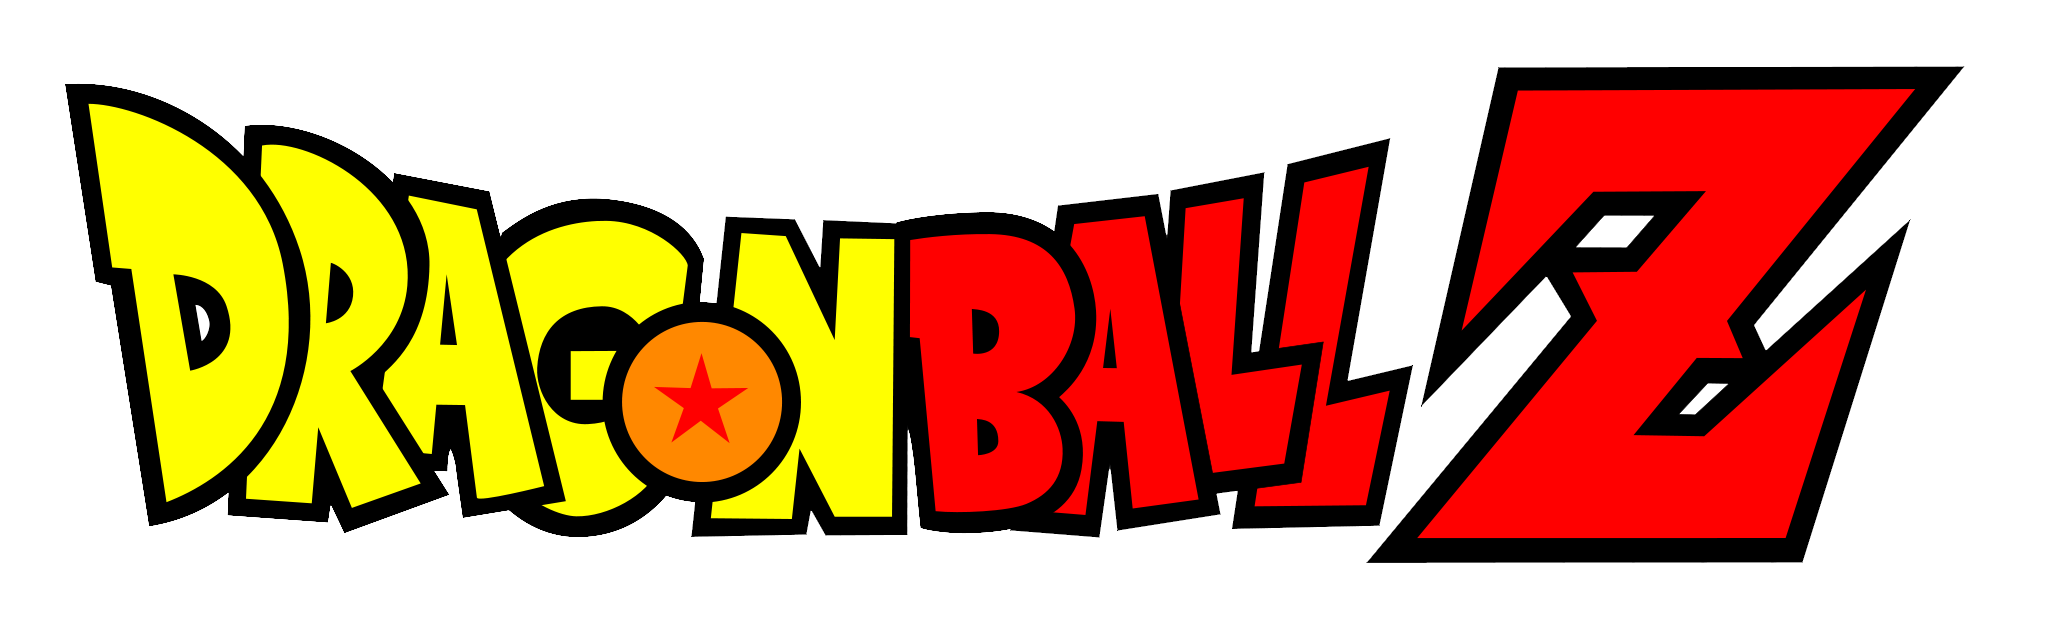 Dragon Ball Z Logo 2 image - Mod DB